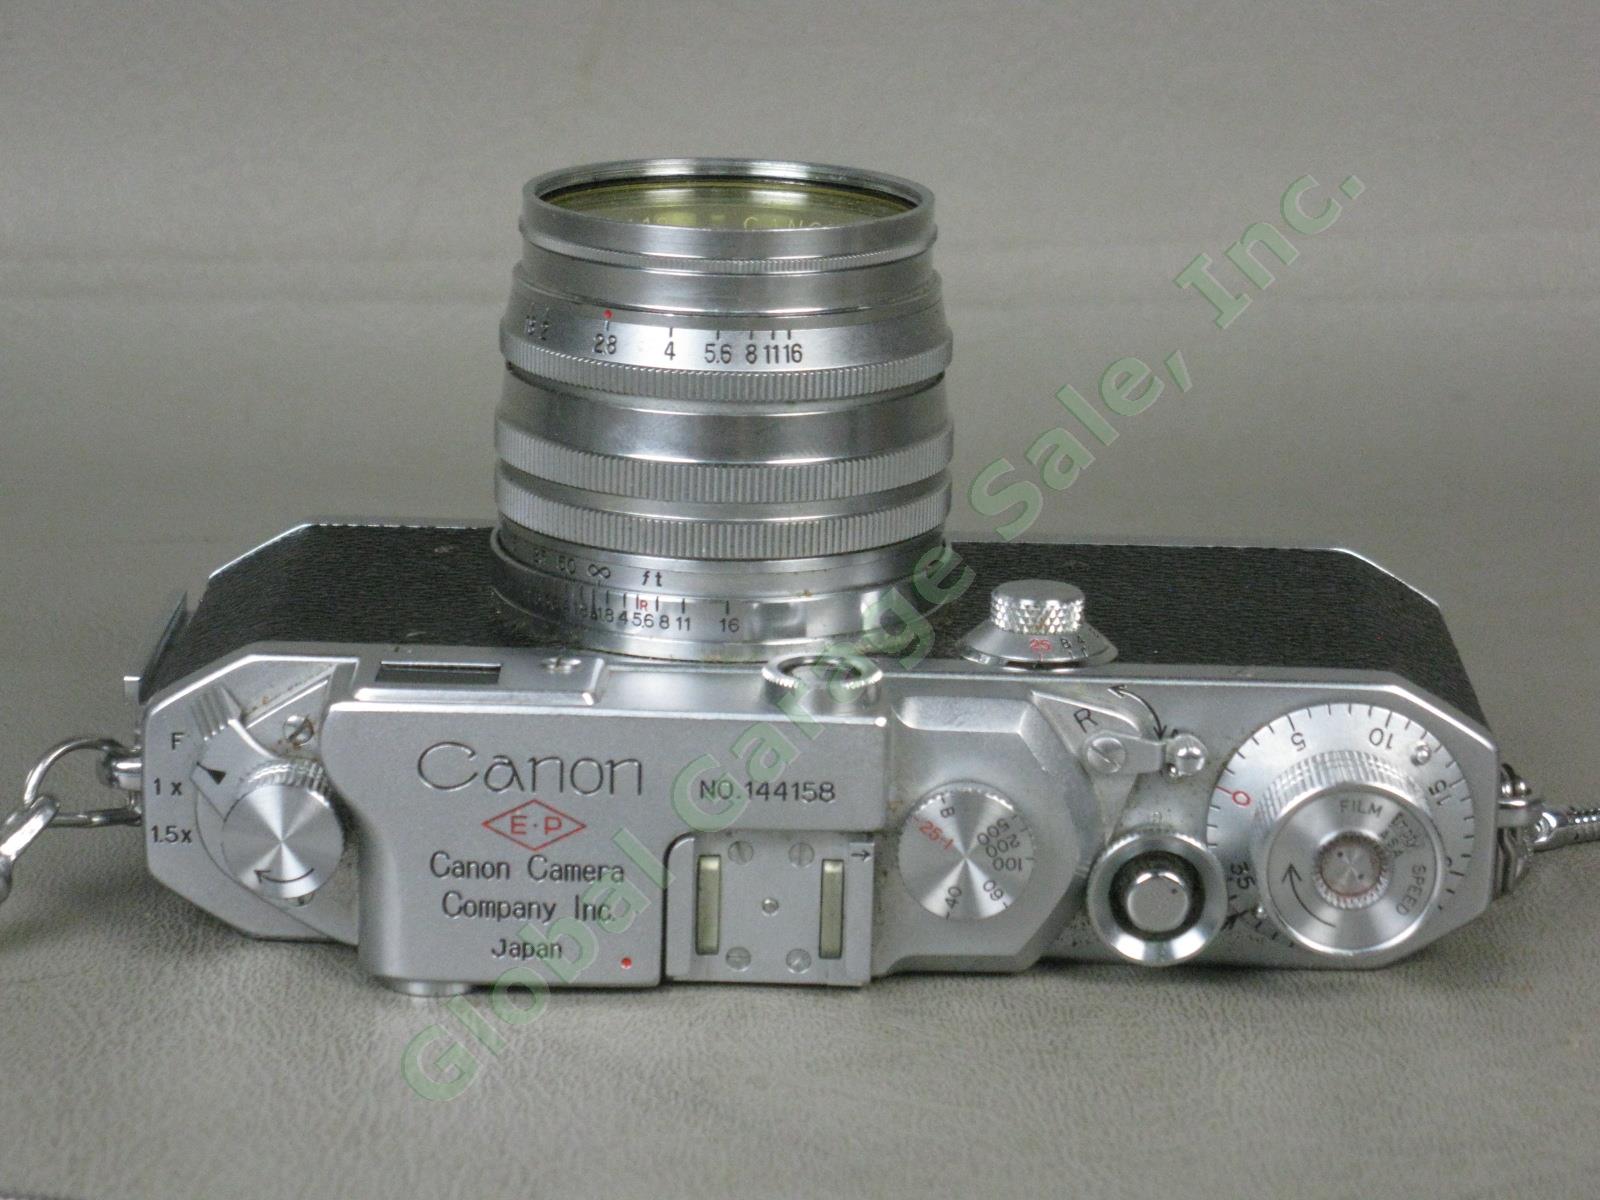 Vtg 1950s Canon IVSB IV SB EP Film Camera 50mm f/1.8 Lens Japan No 144158 NO RES 5